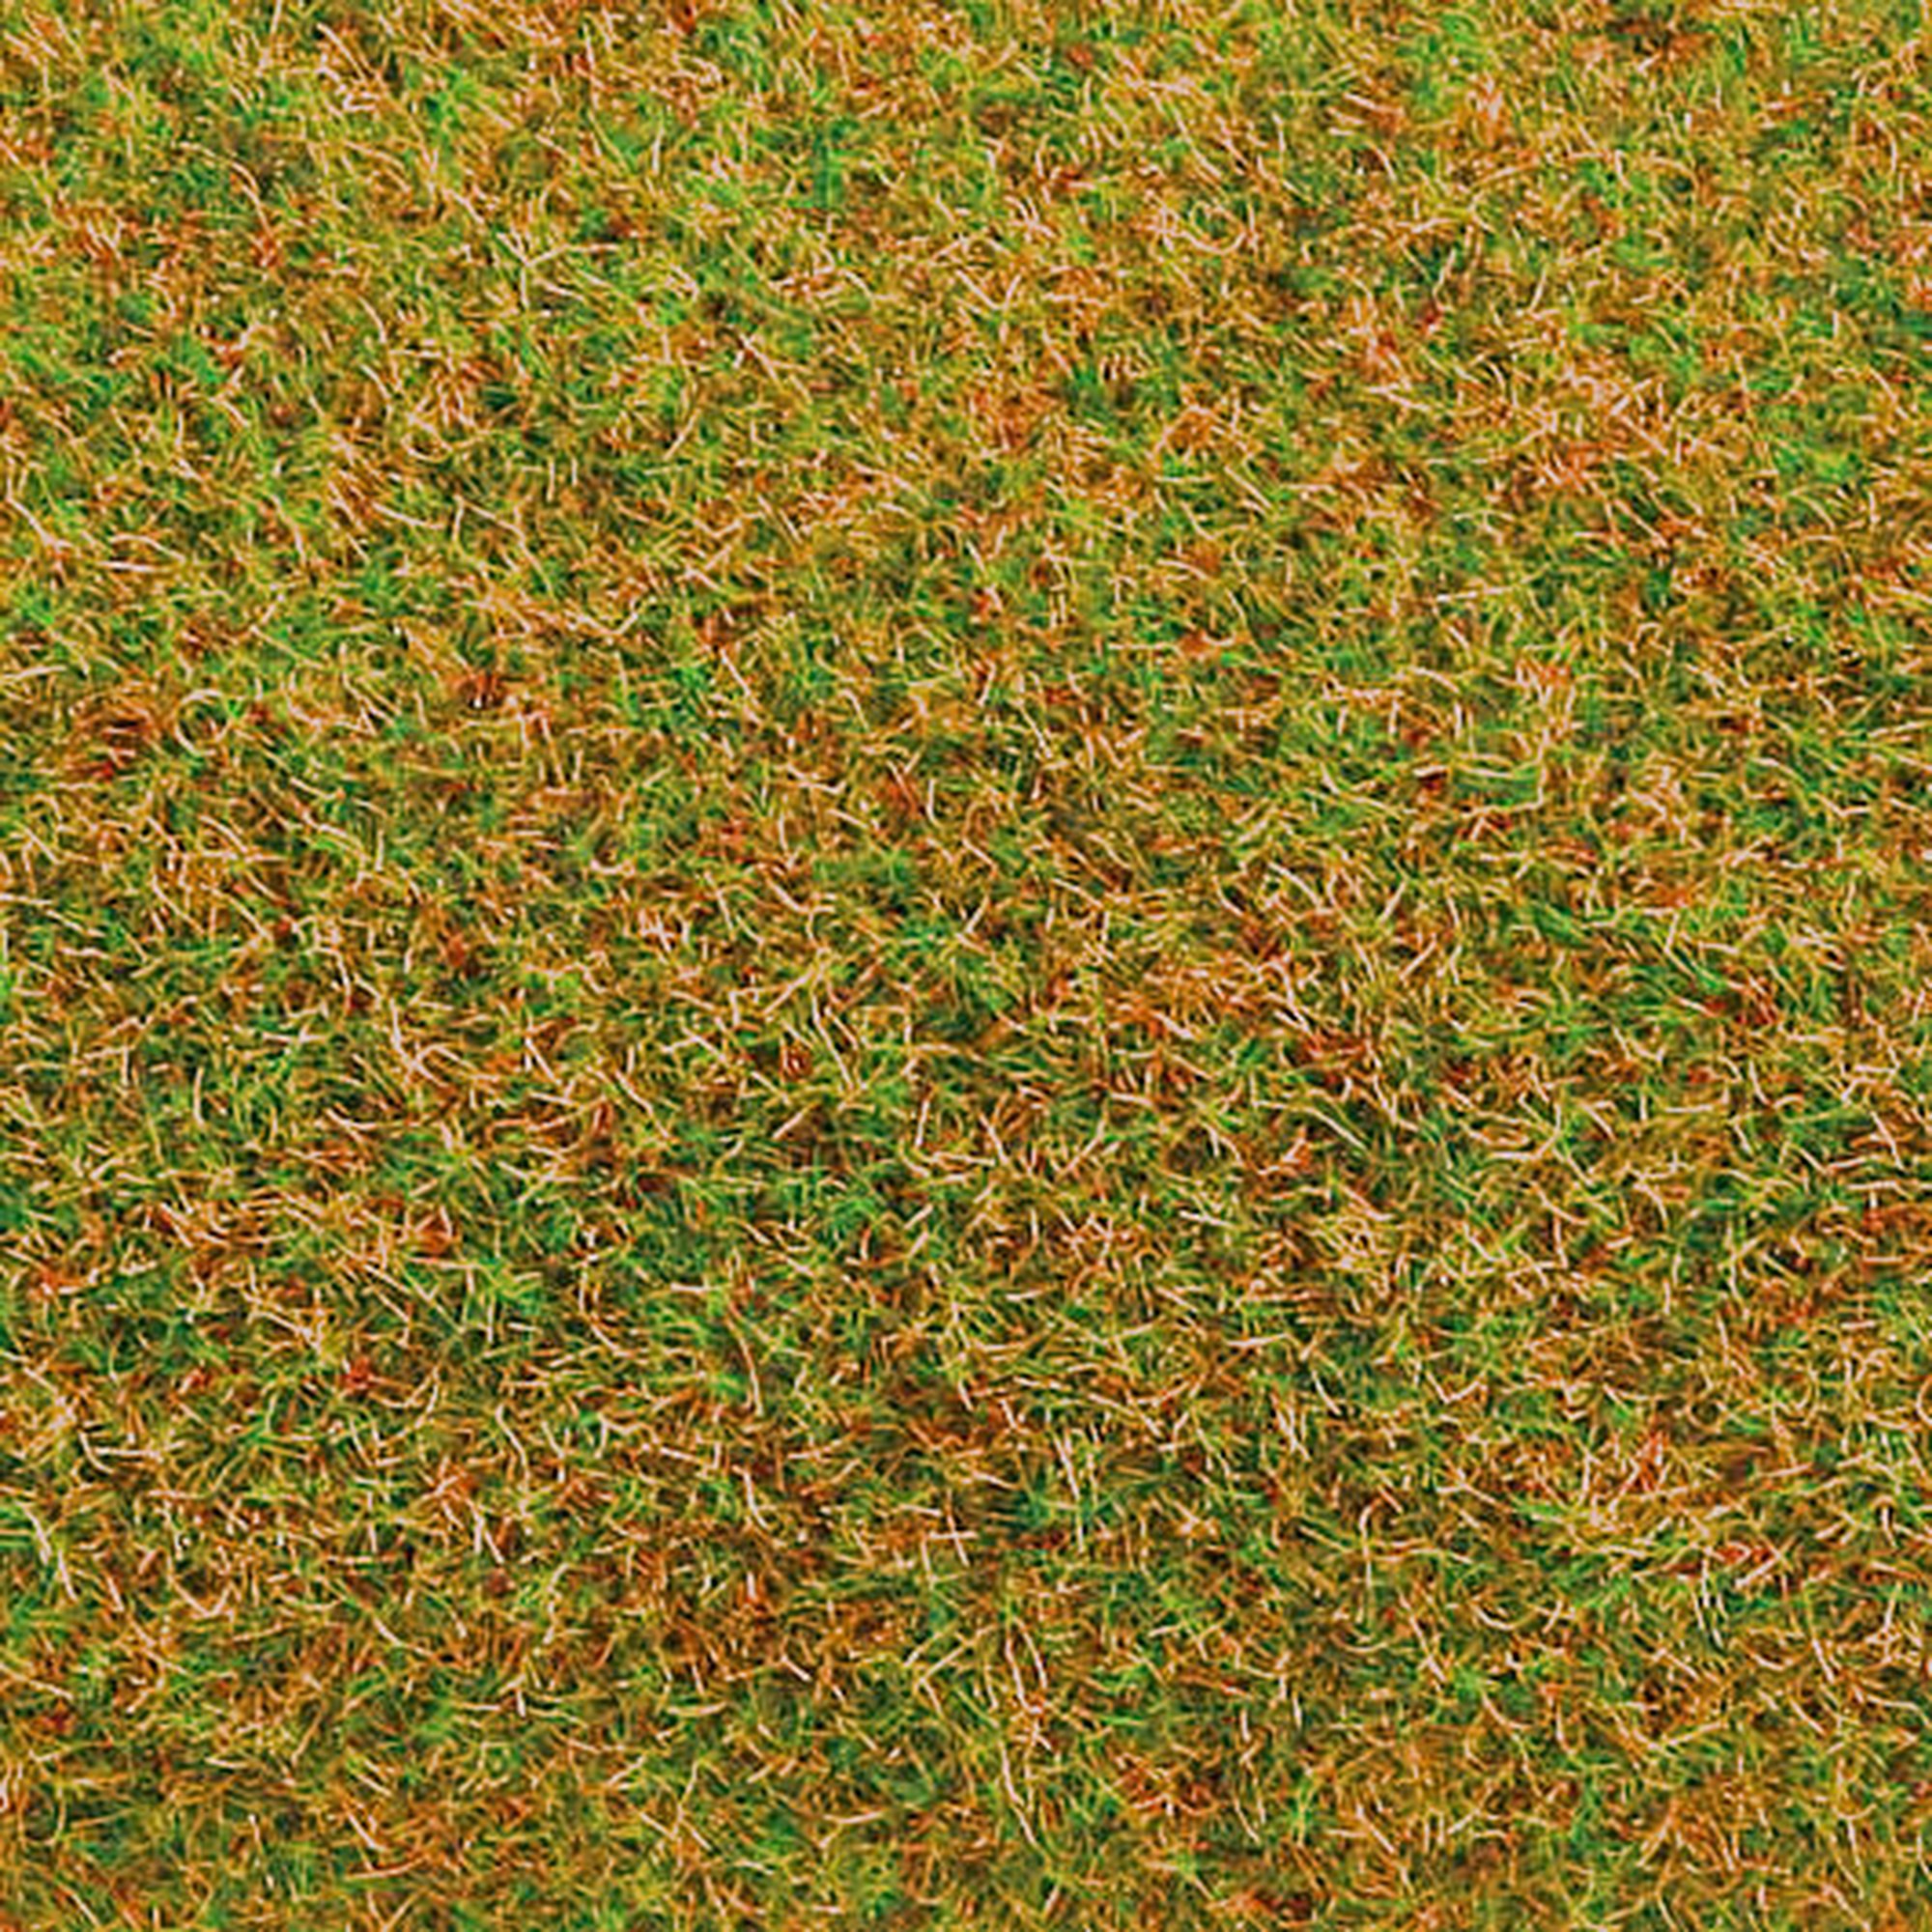 Tapis d'herbe verte claire 1 x 1.5 ml - FALLER 180754